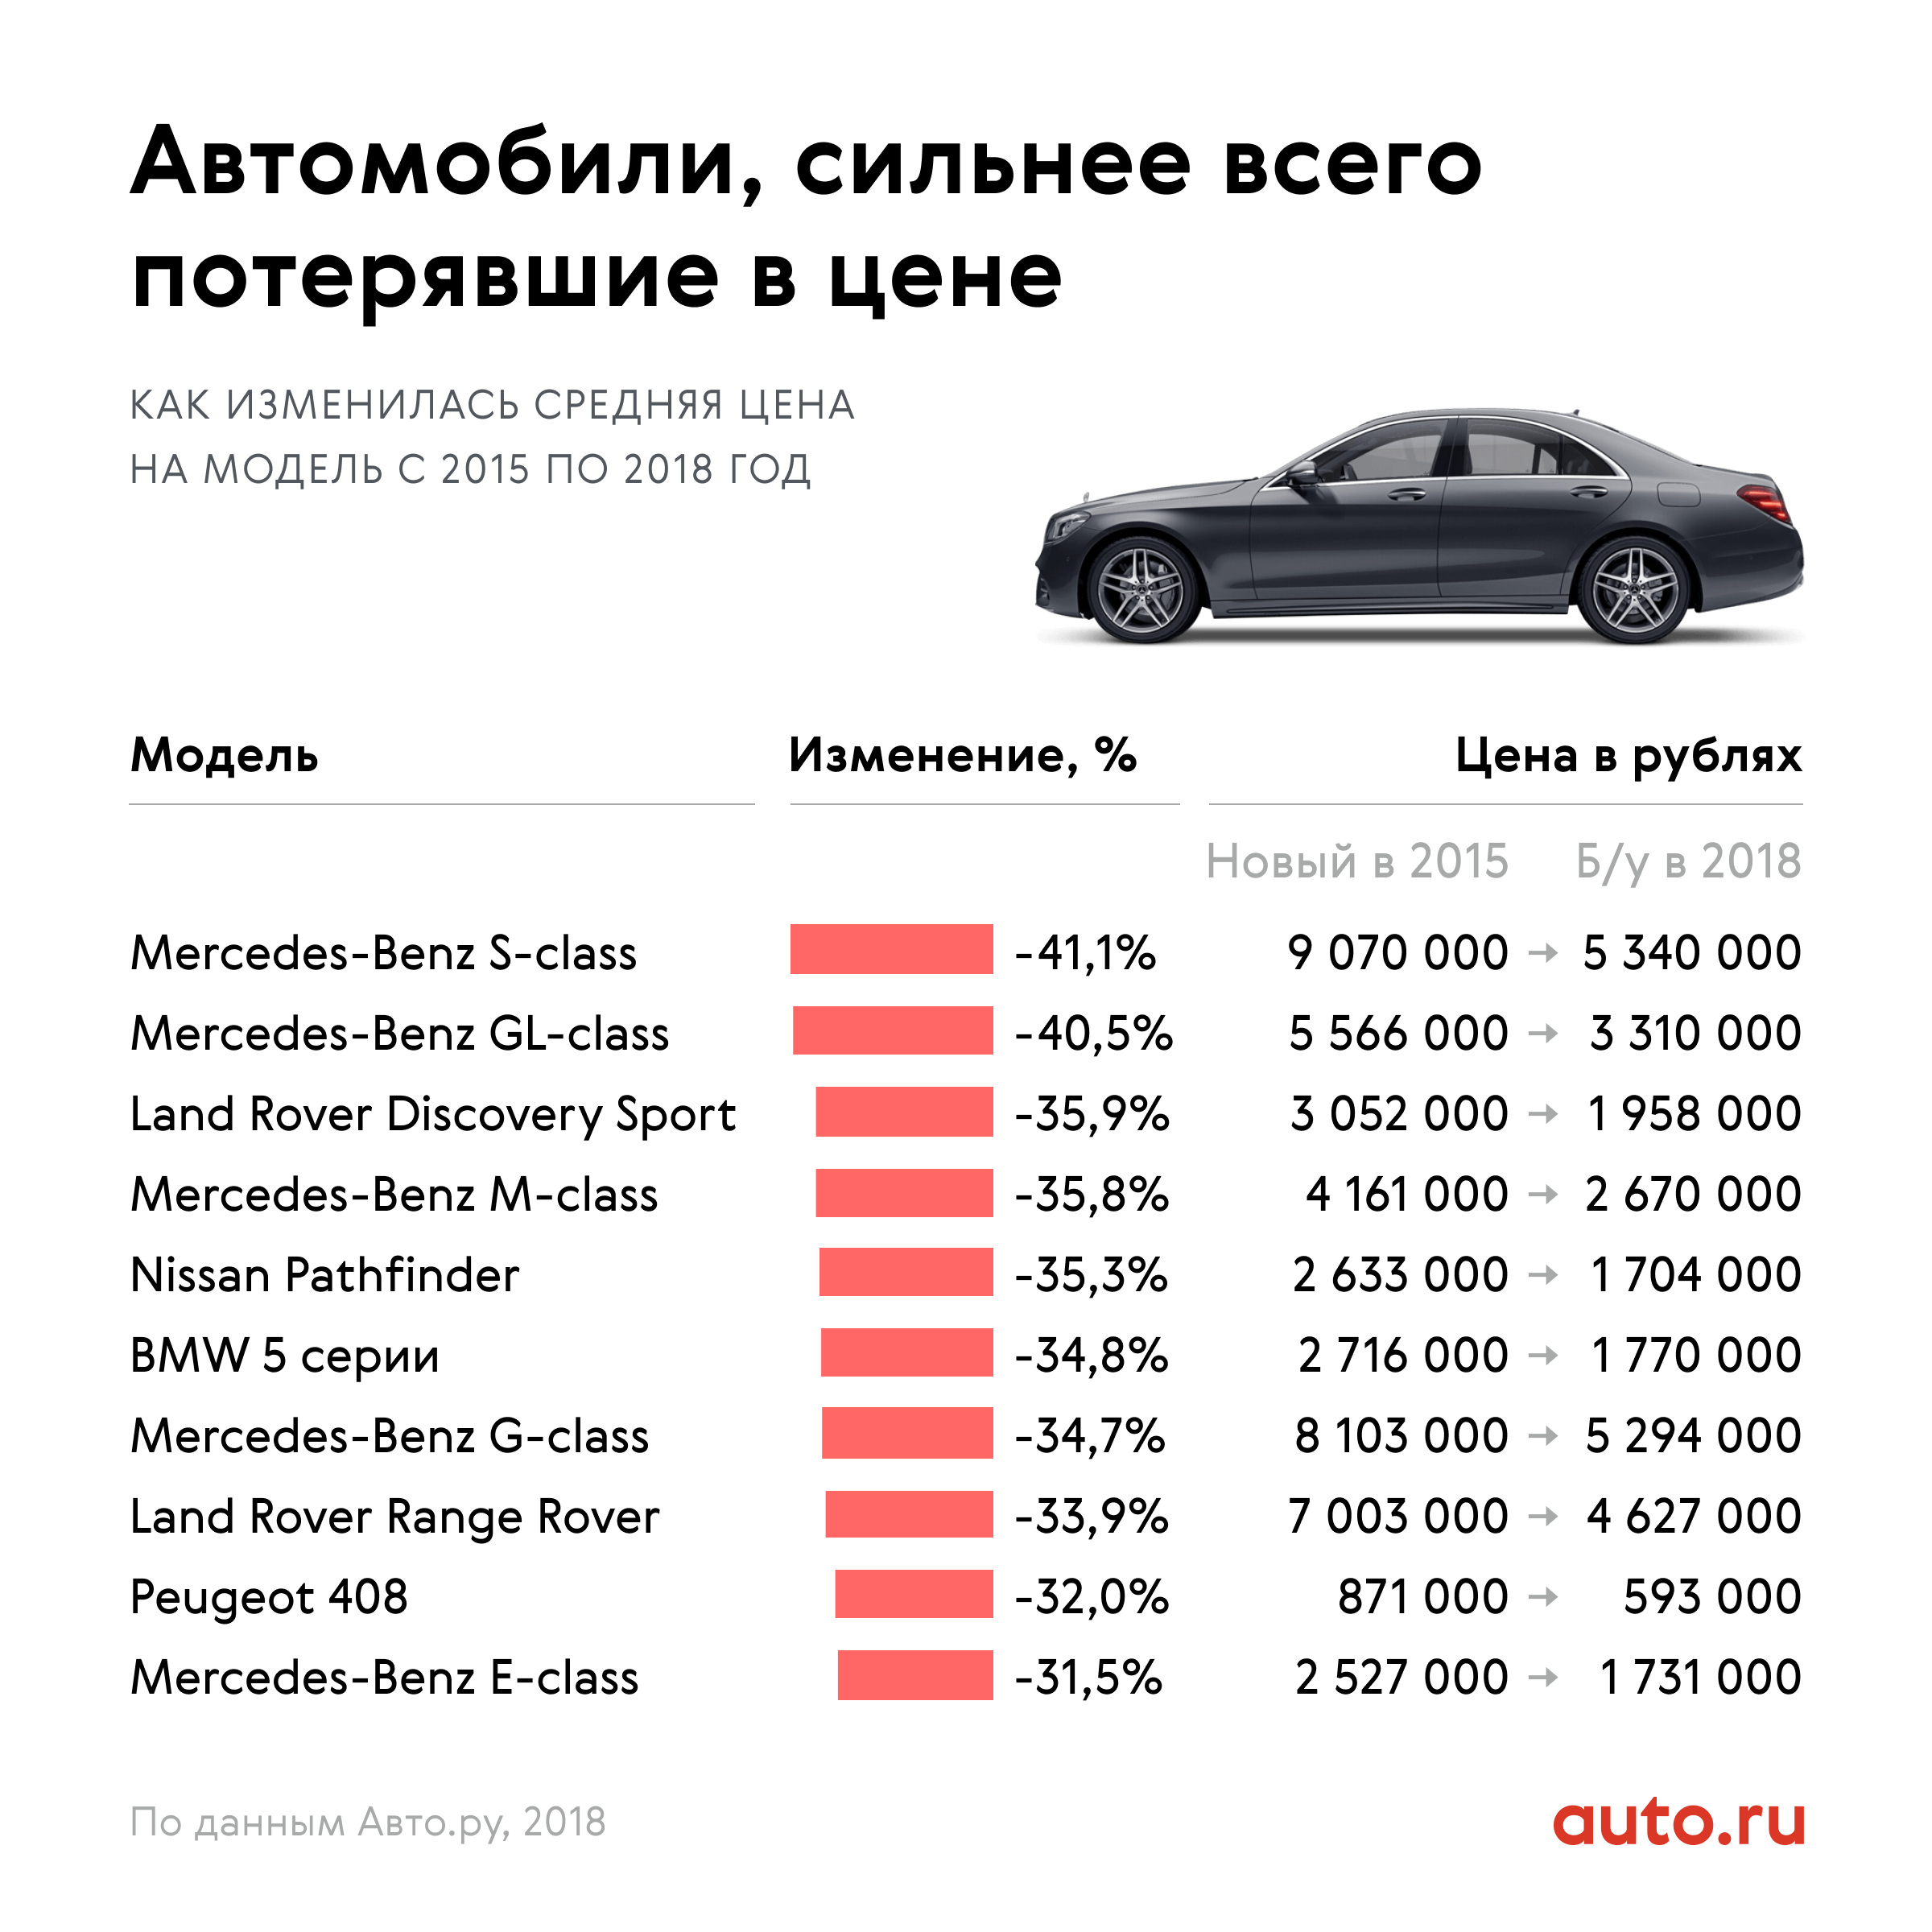 Купить новые авто из США - цены на новые авто в США под заказ на slep-kostroma.ru